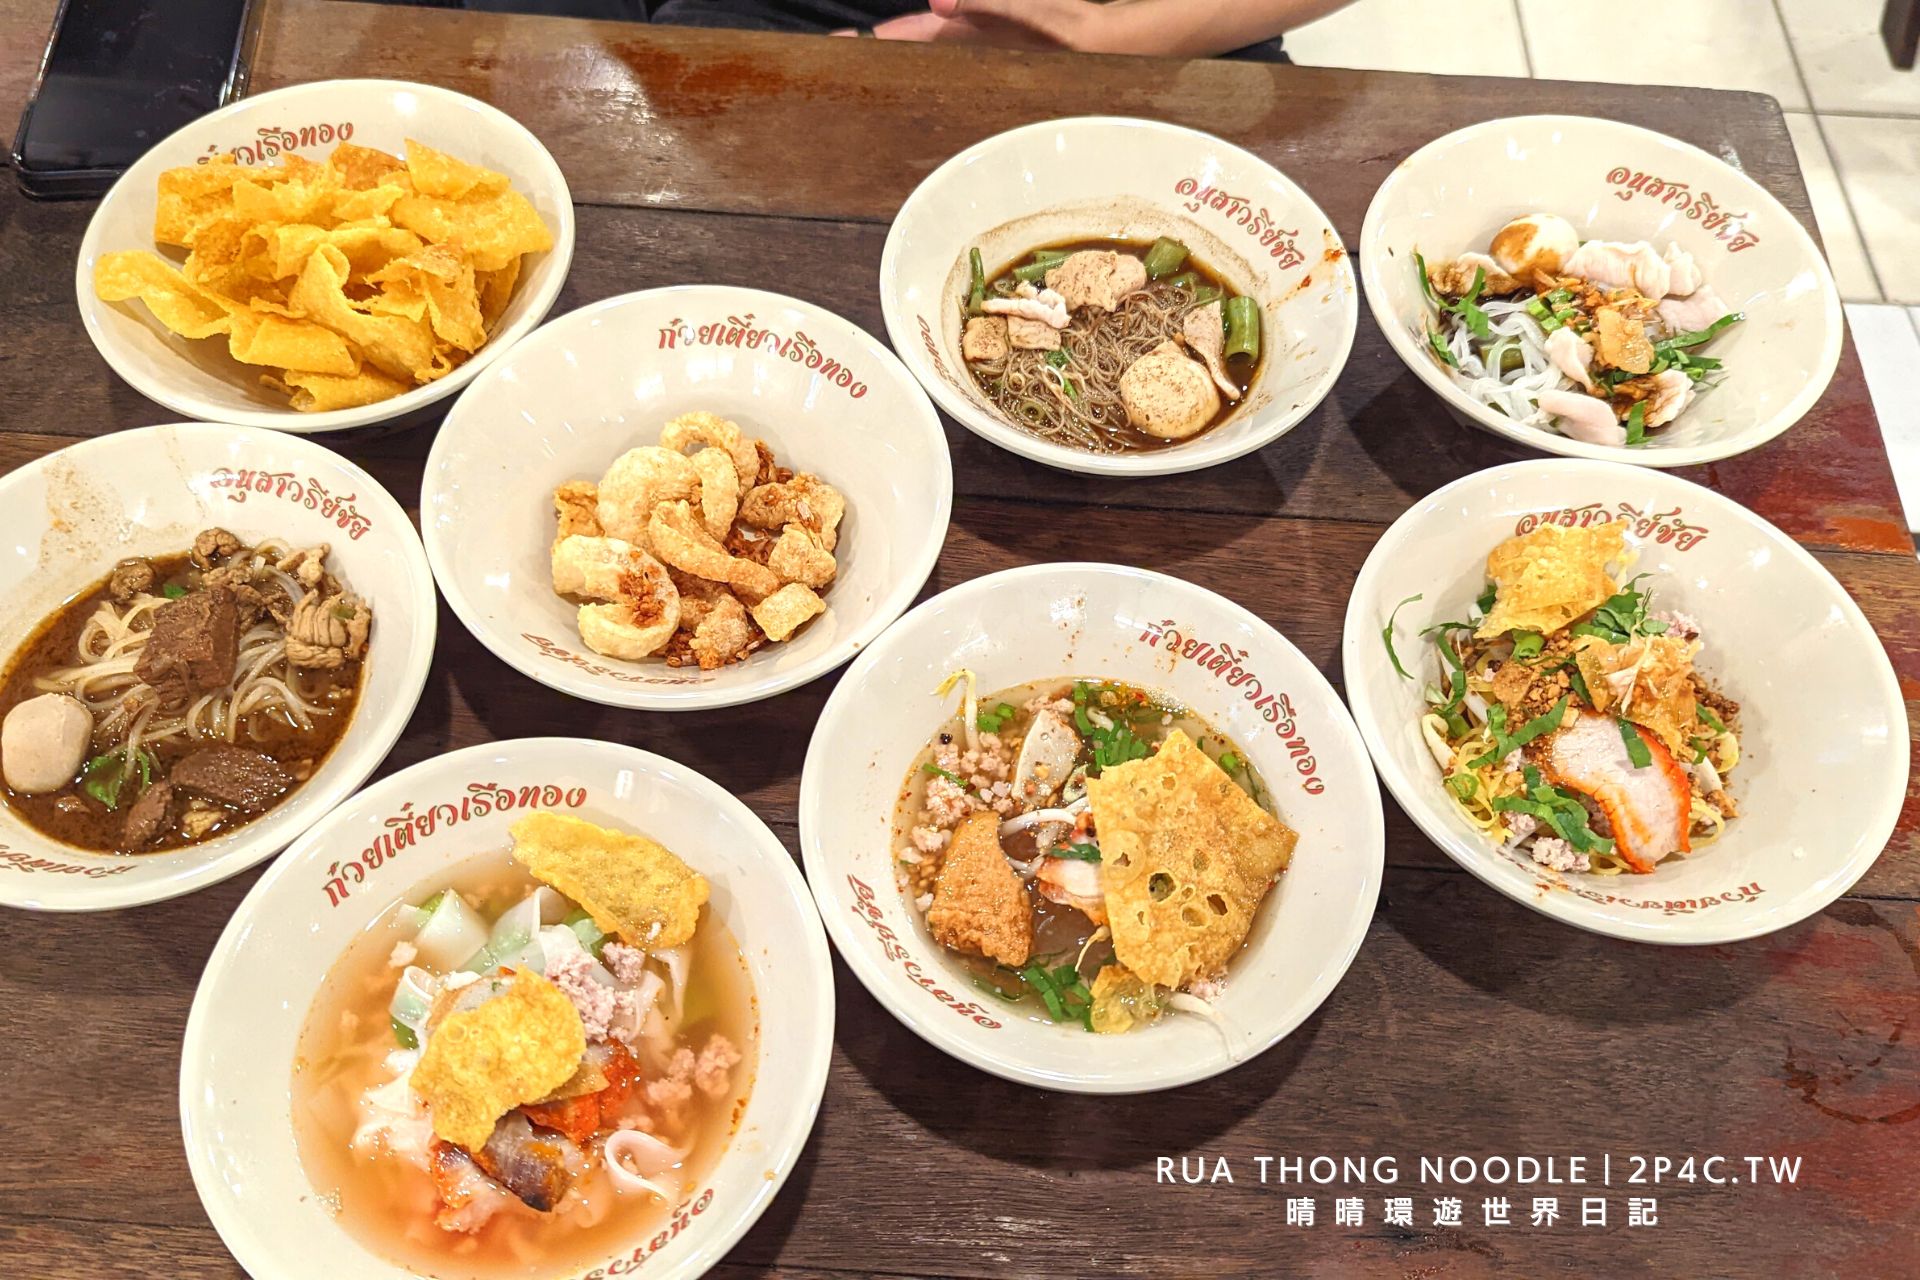 勝利紀念碑Rua Thong Noodle－船麵一條街－船麵－不同口味超好吃  值得一提的是，這家Rua Thong Noodle提供的口味十分豐富，包含了辣椒肉碎、肉丸、牛肉、豬肉、海鮮、蔬菜等多種選擇，讓顧客可以根據自己的口味喜好來點選。